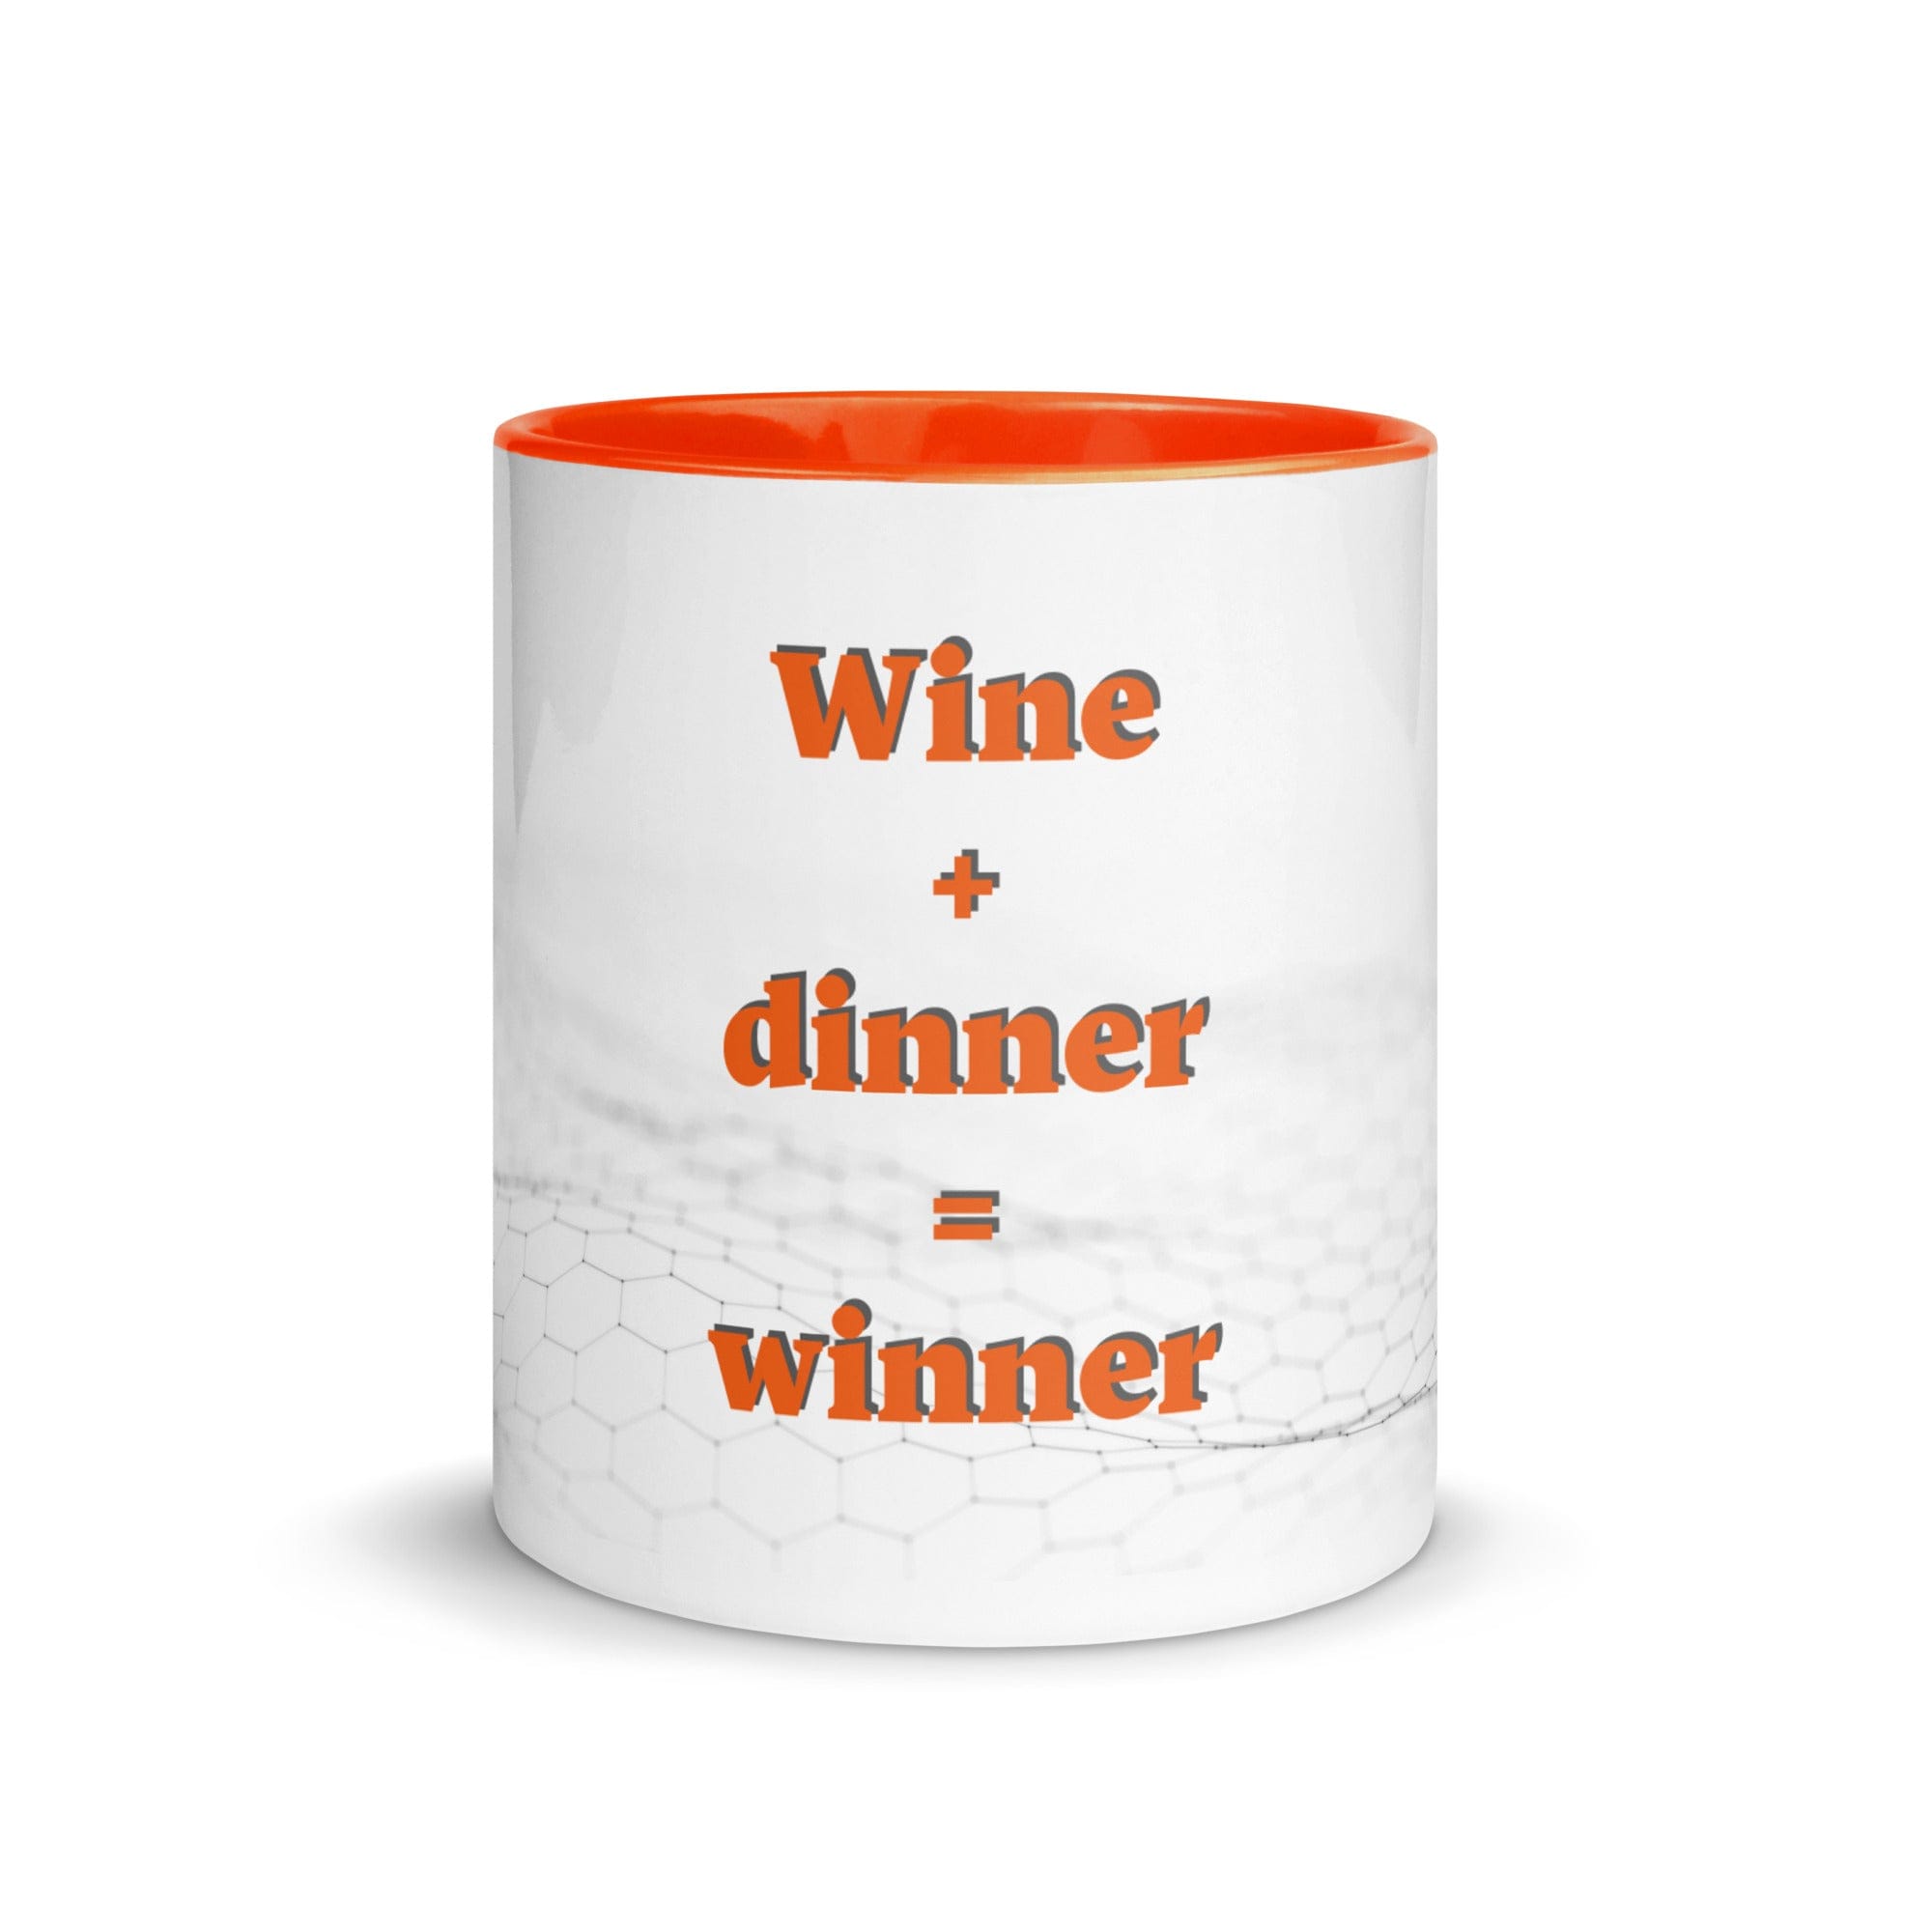 Wine + Dinner = Winner-Olettop Wine Dinner Winner